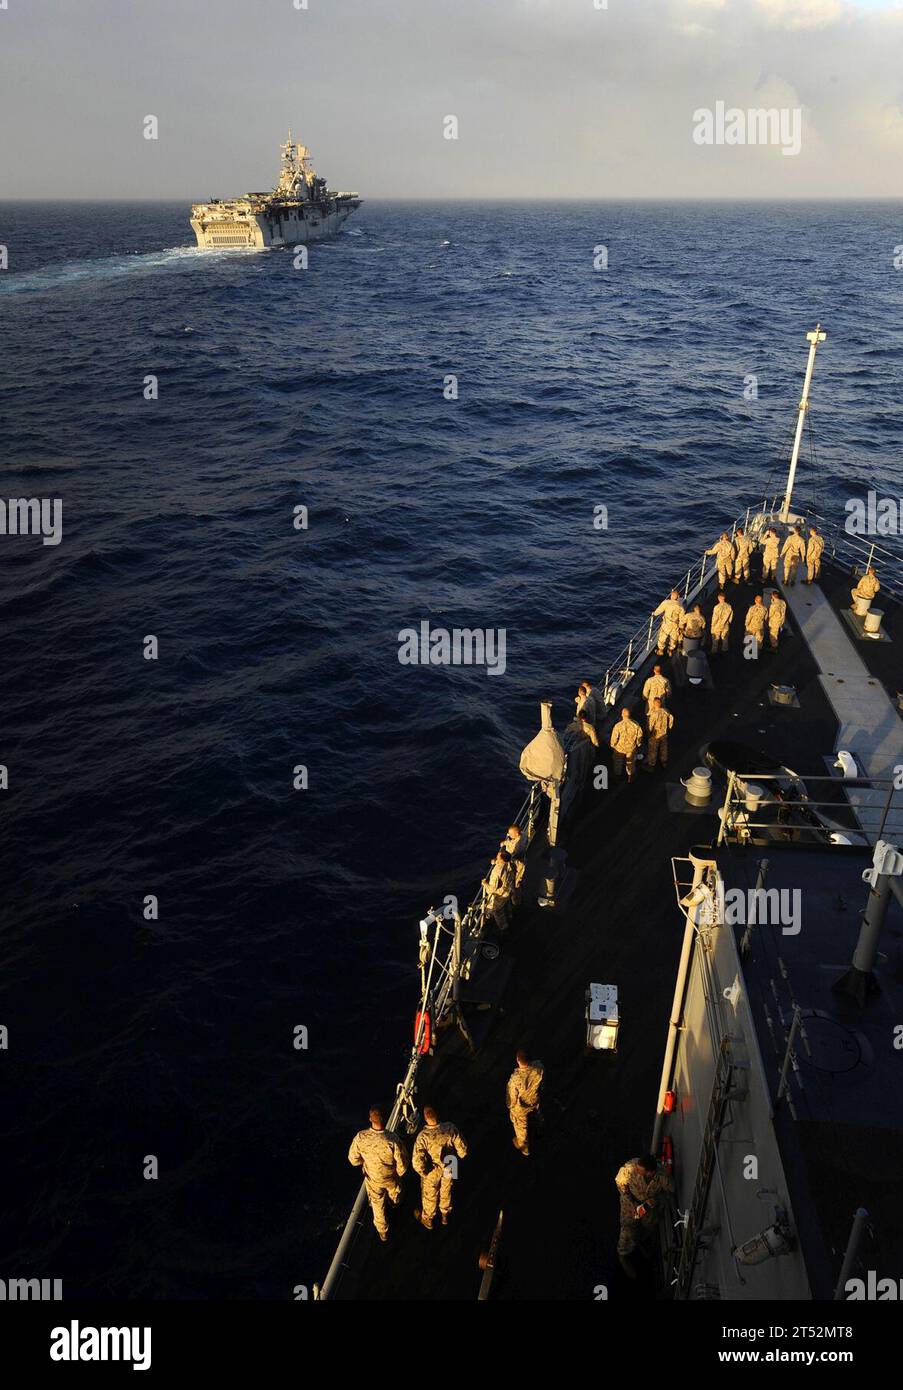 0905185345W-086 OCÉANO ATLÁNTICO (18 de mayo de 2009) Marines de la 22ª Unidad Expedicionaria de Marina (22 MEU) observan desde el foc'sle del buque de desembarco anfibio USS Fort McHenry (LSD 43) mientras se acercan al buque de asalto anfibio USS Bataan (LHD 5) para repostar en el mar. Fort McHenry está en un despliegue programado con el Grupo de Preparación Anfibia de Bataan (ARG) apoyando las operaciones de seguridad marítima en las áreas de responsabilidad de la 5ta y 6ta Flota de los Estados Unidos. Marina Foto de stock